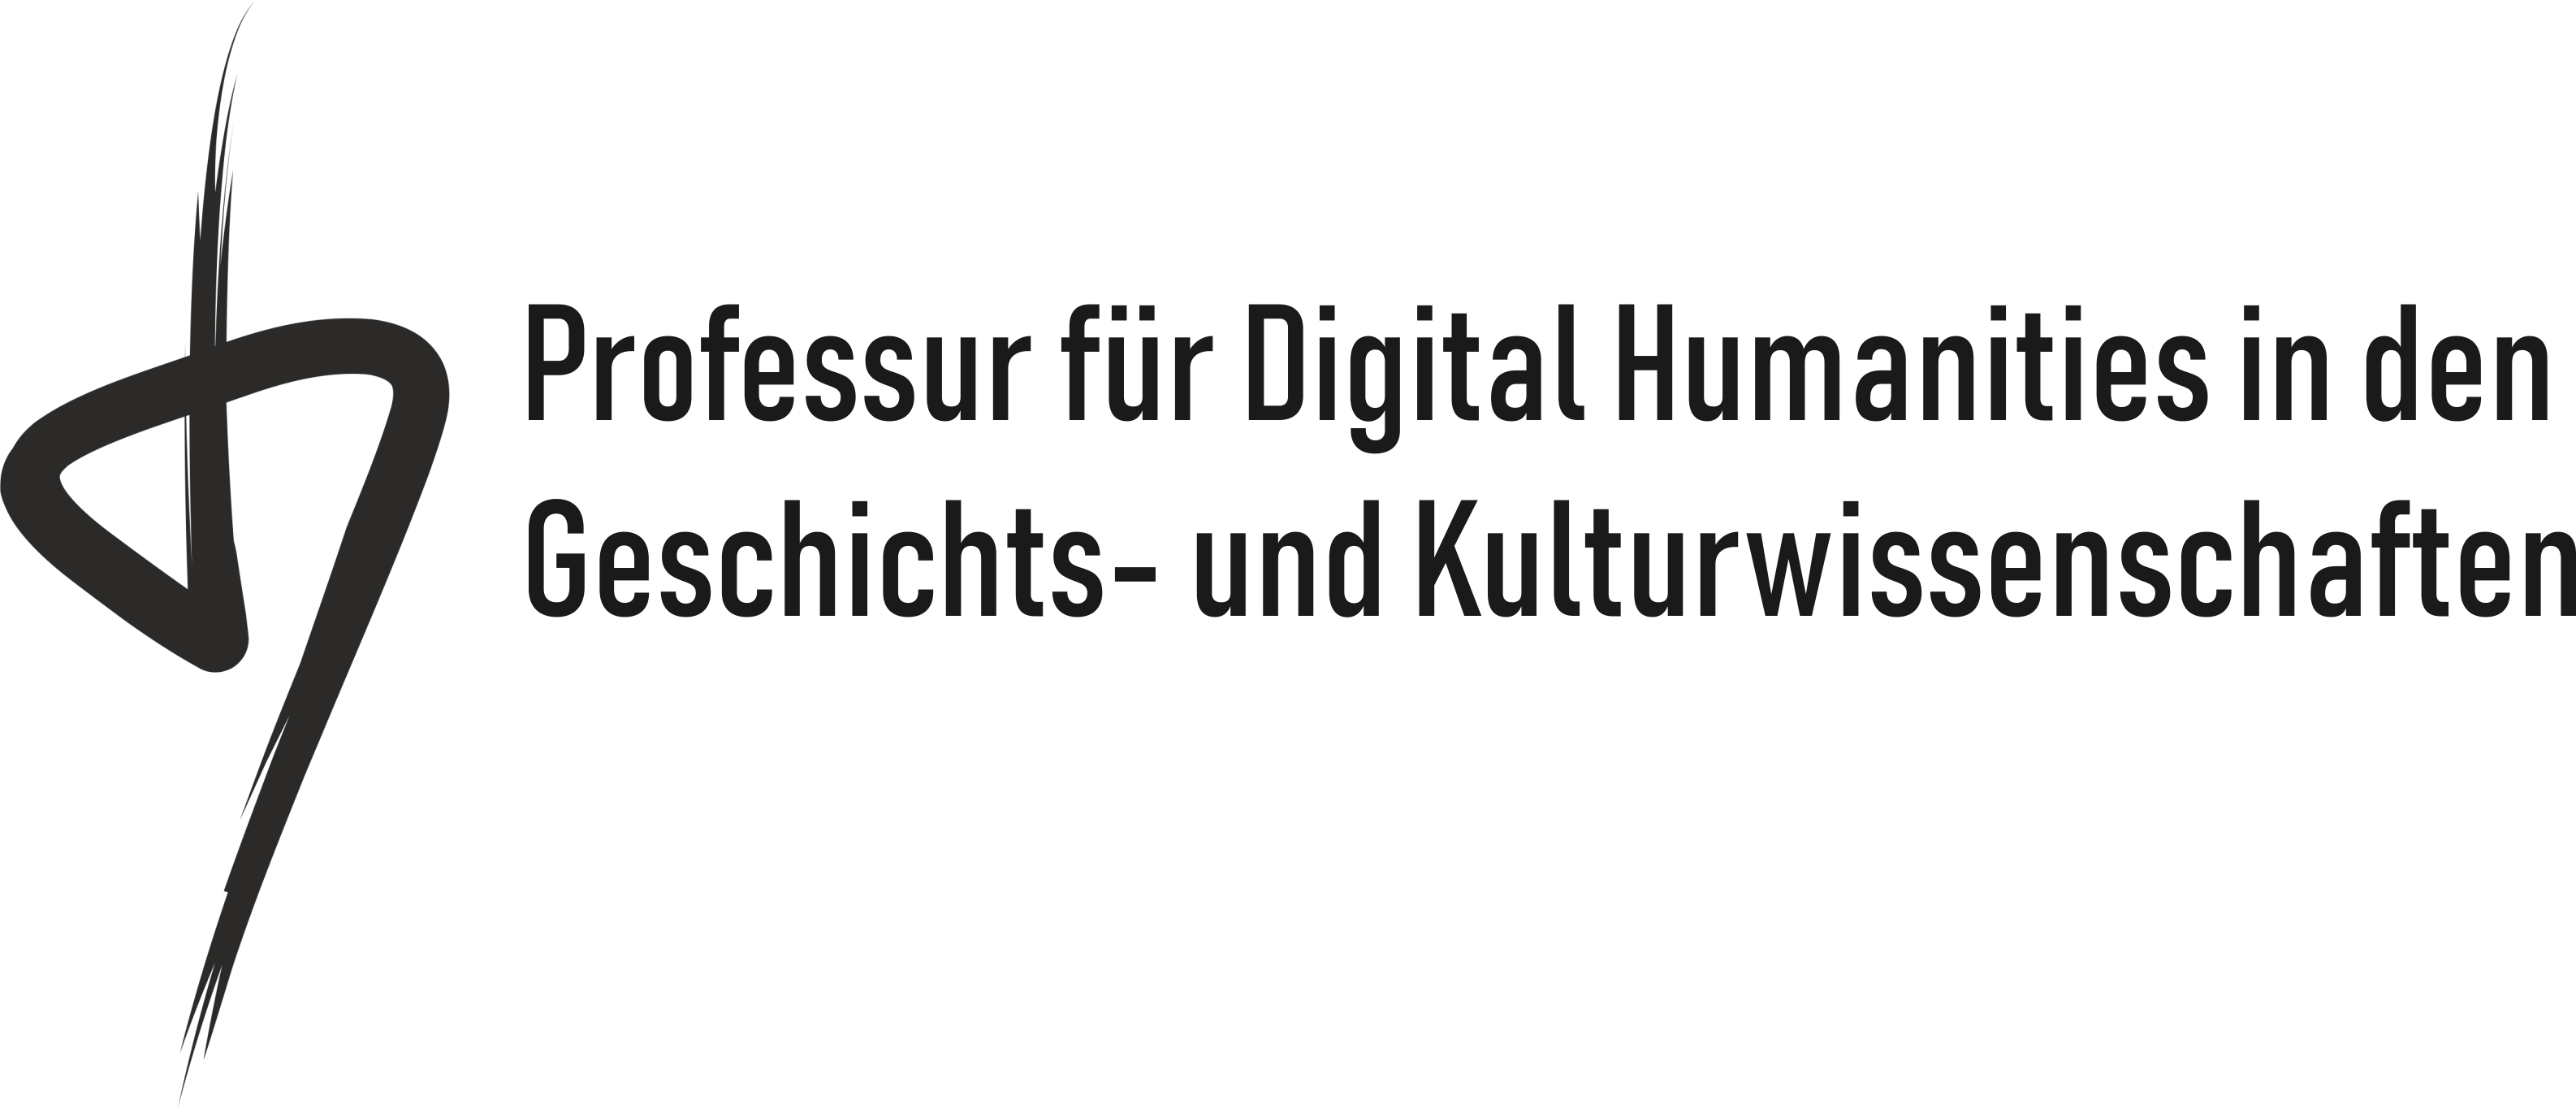 Professur für Digital Humanities in den Geschichts- und Kulturwissenschaften